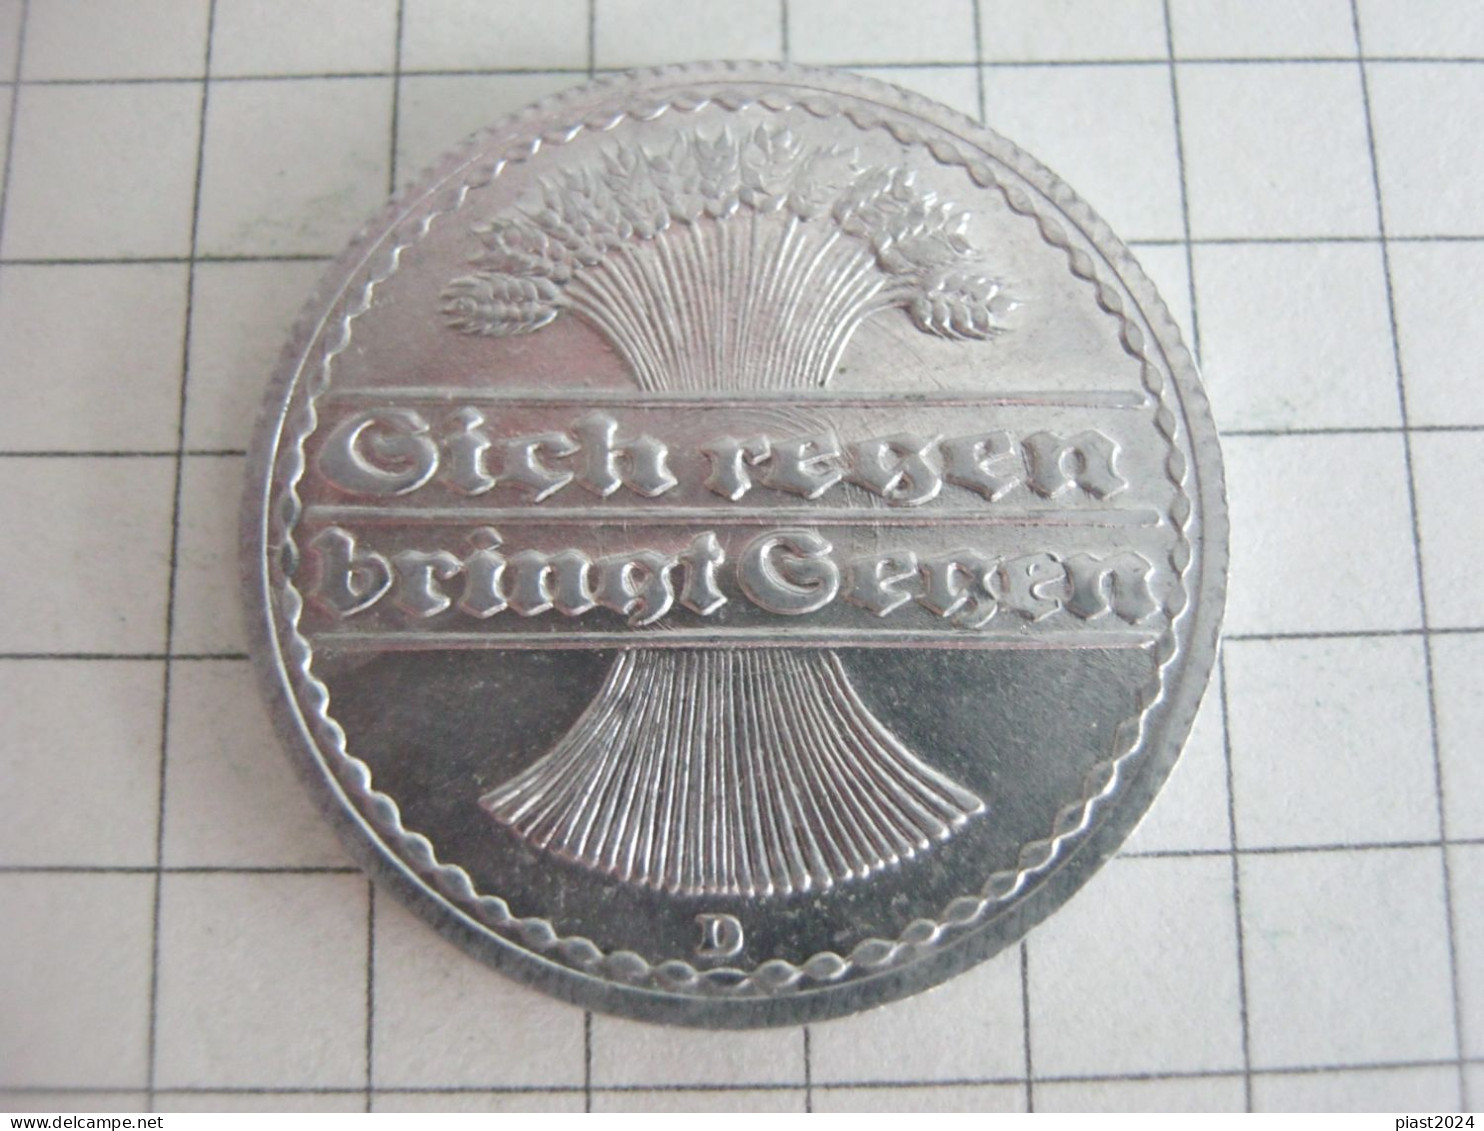 Germany 50 Pfennig 1921 D - 50 Rentenpfennig & 50 Reichspfennig